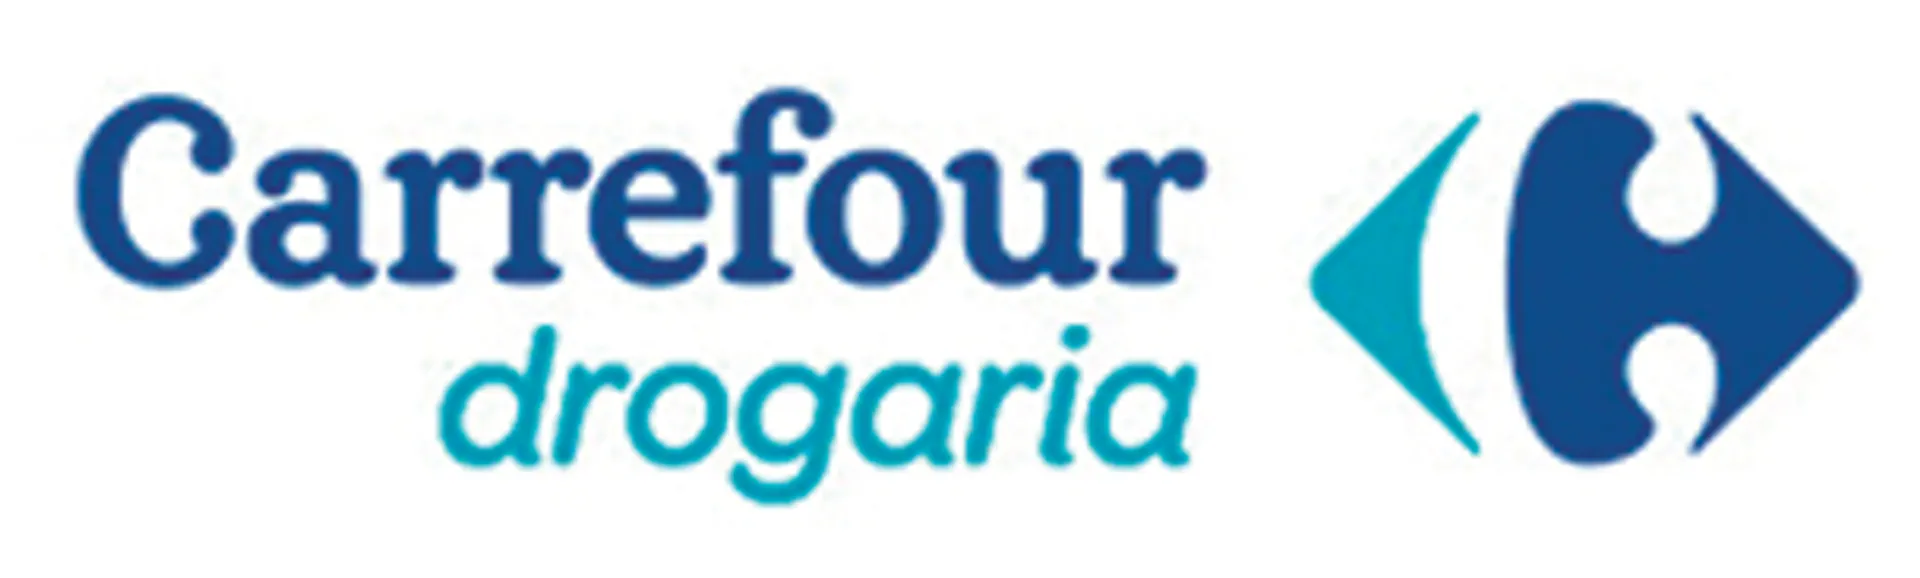 DROGARIAS CARREFOUR logo